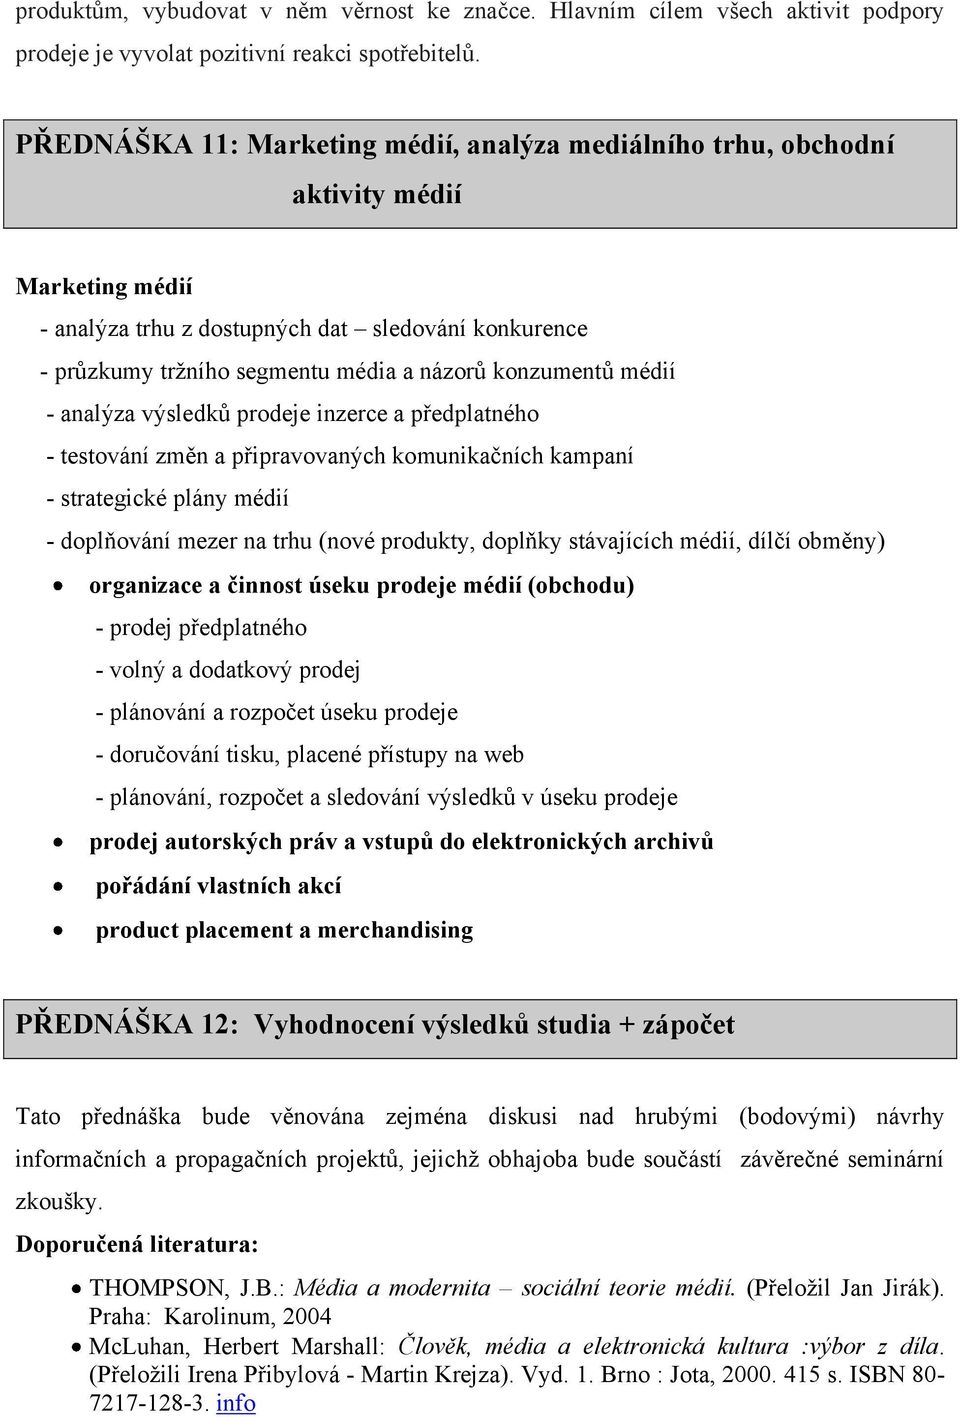 konzumentů médií - analýza výsledků prodeje inzerce a předplatného - testování změn a připravovaných komunikačních kampaní - strategické plány médií - doplňování mezer na trhu (nové produkty, doplňky